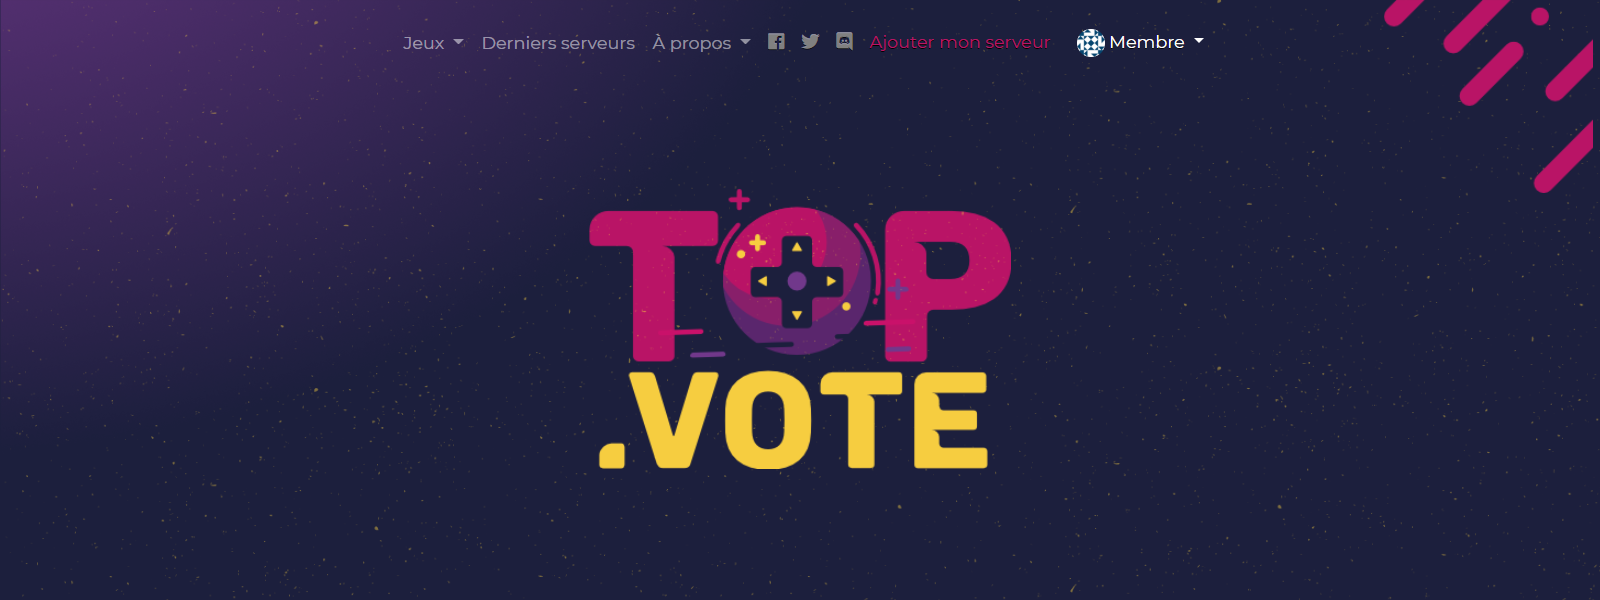 Top.vote - développé par Nity Pro